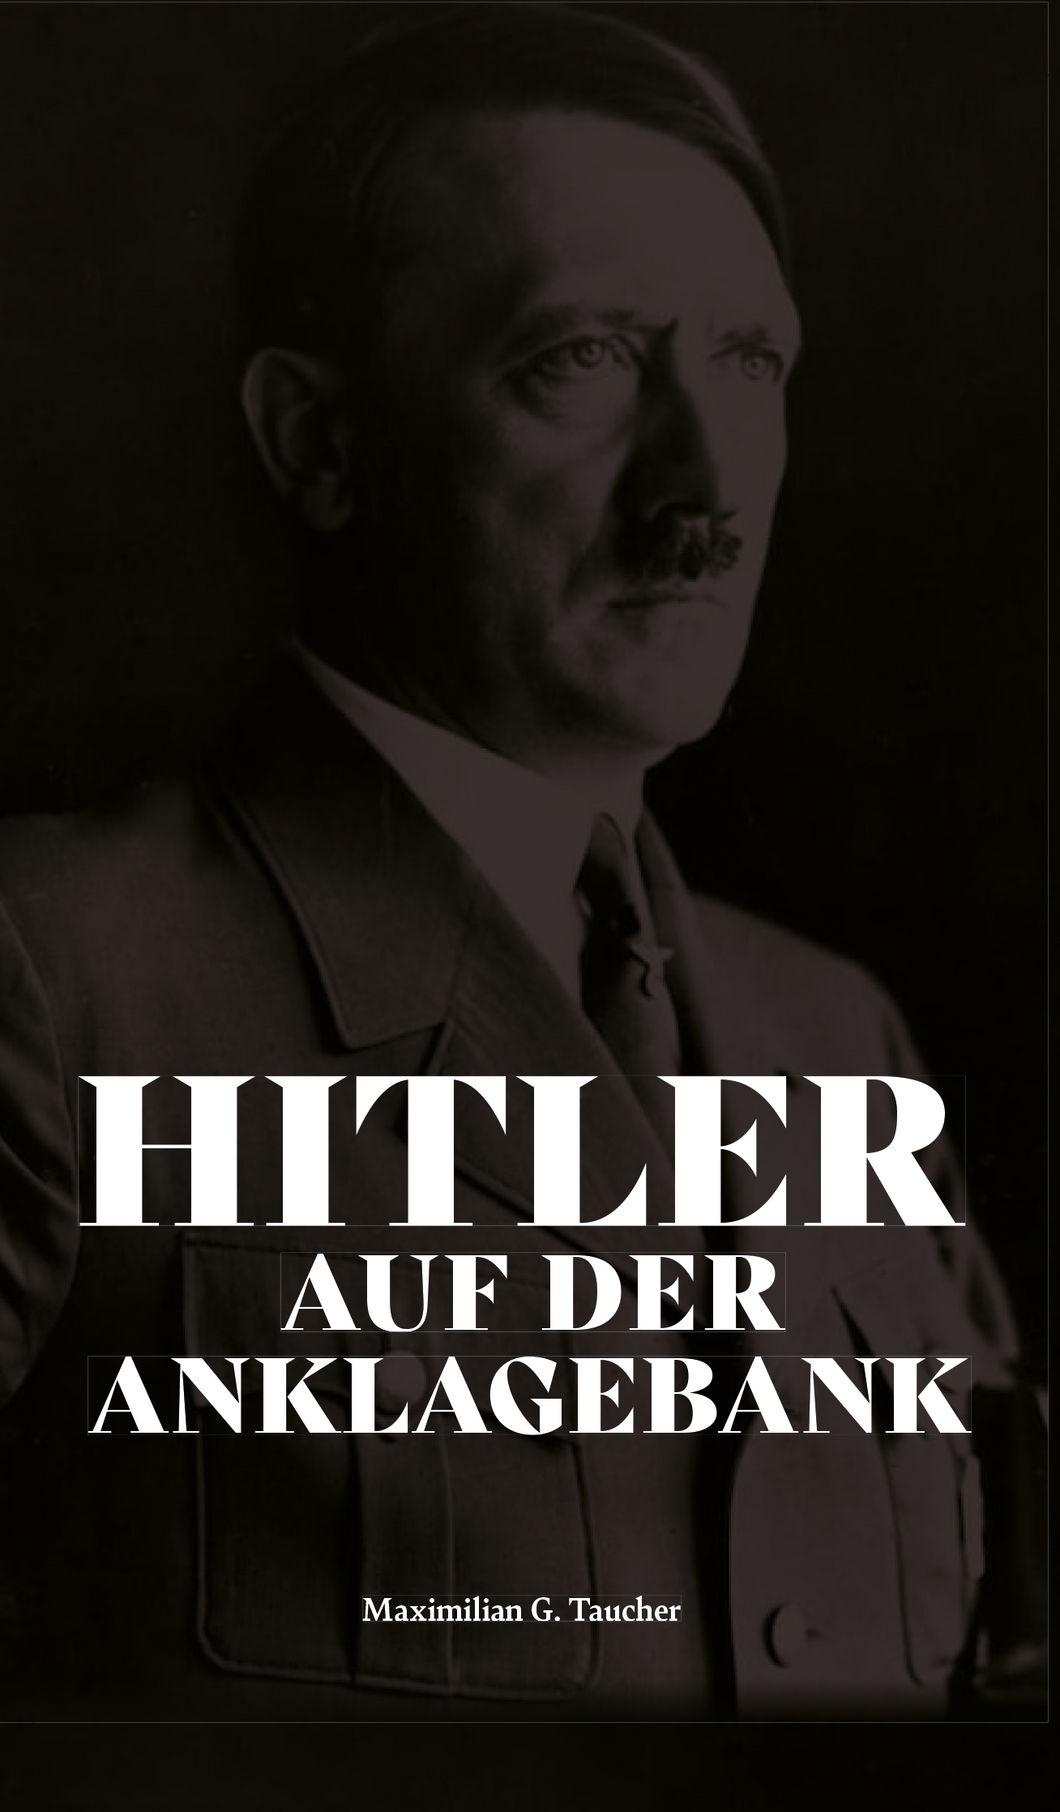 Hitler auf der Anklagebank